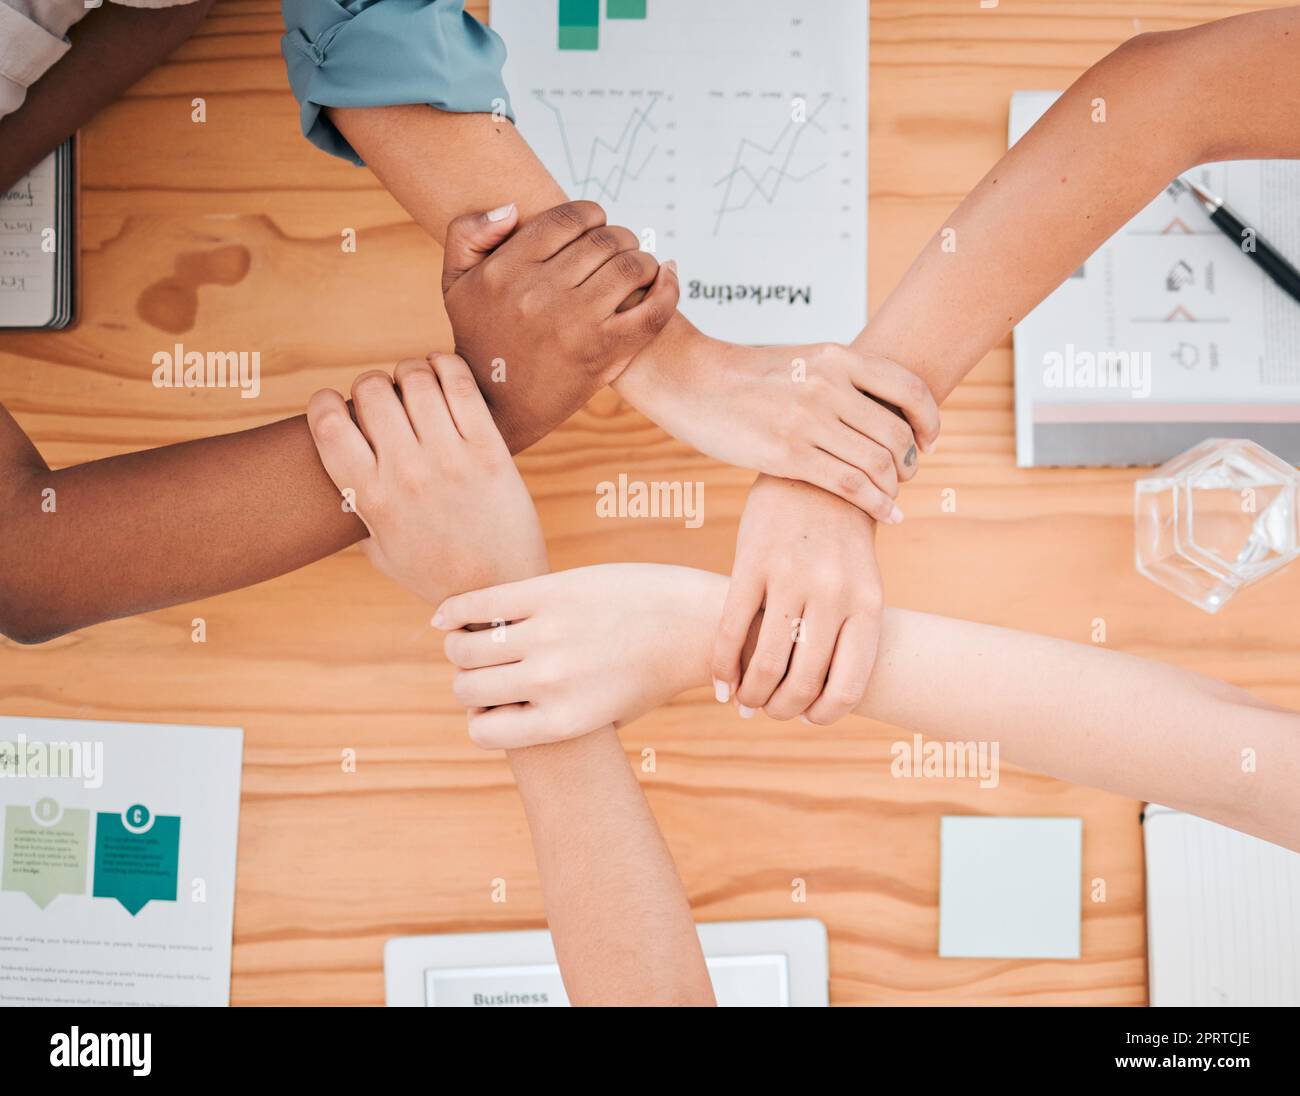 Teambildung, Diversität und Sicht auf die Hände von Geschäftsleuten in Meetings für Strategie, Verbindung und Unterstützung. Teamarbeit, Mission und Zusammenarbeit mit Mitarbeitern, die sich für die Gemeinschaft am Handgelenk halten Stockfoto